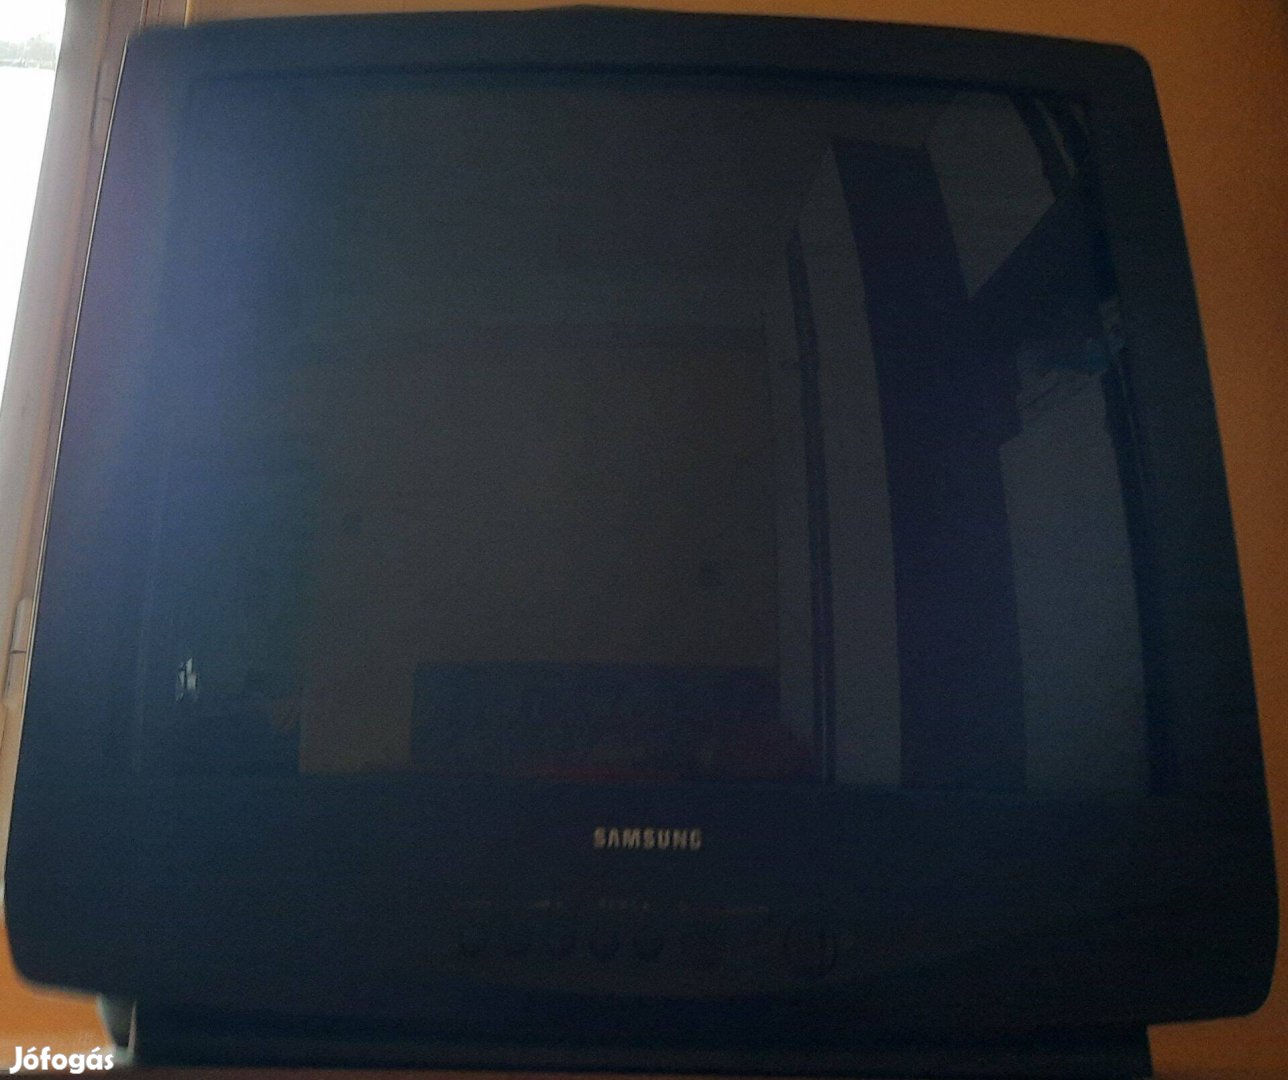 Samsung színes TV, képcsöves, távirányítóval együtt